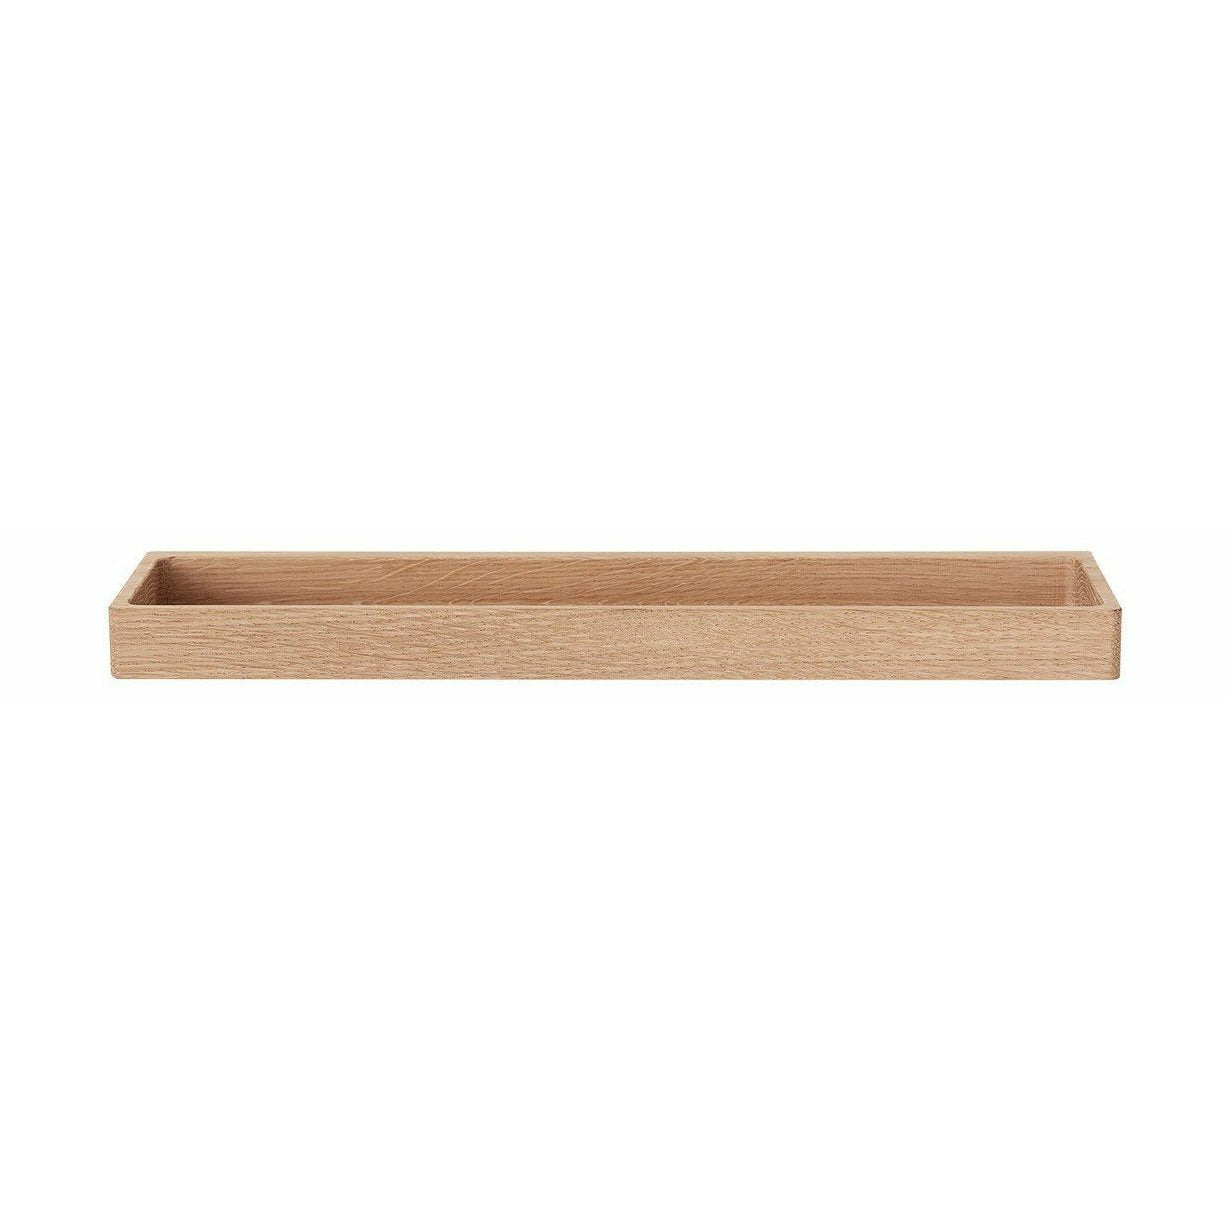 Andersen meubels plank 11 planken, eik, 44x12 cm